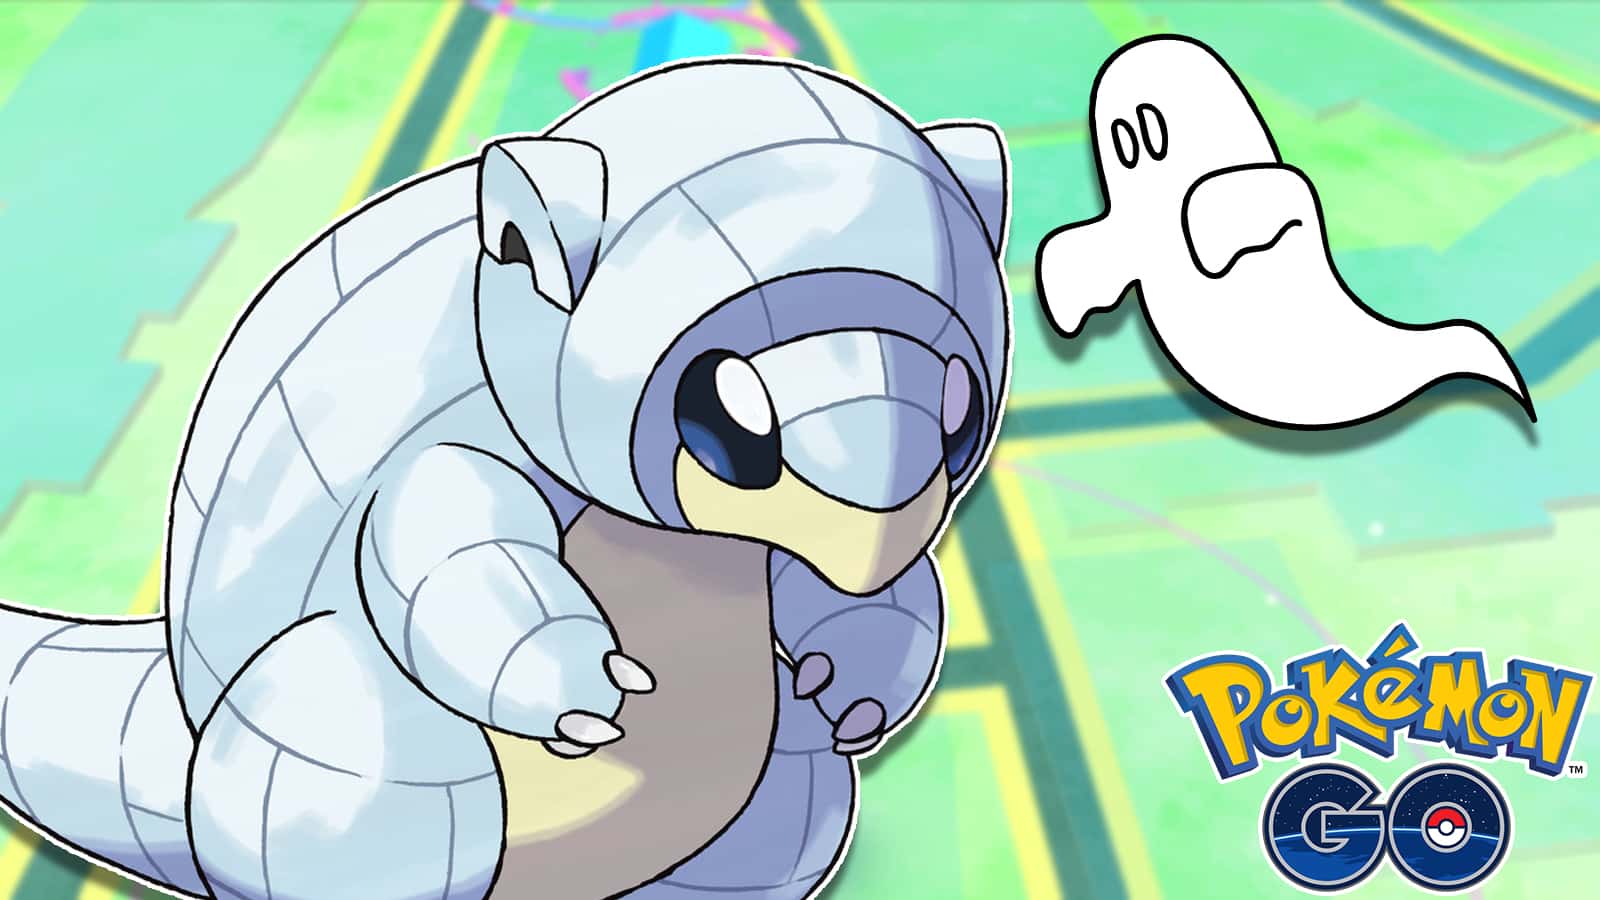 Spooky Pokemon Go glitch is turning Pokemon into ghosts